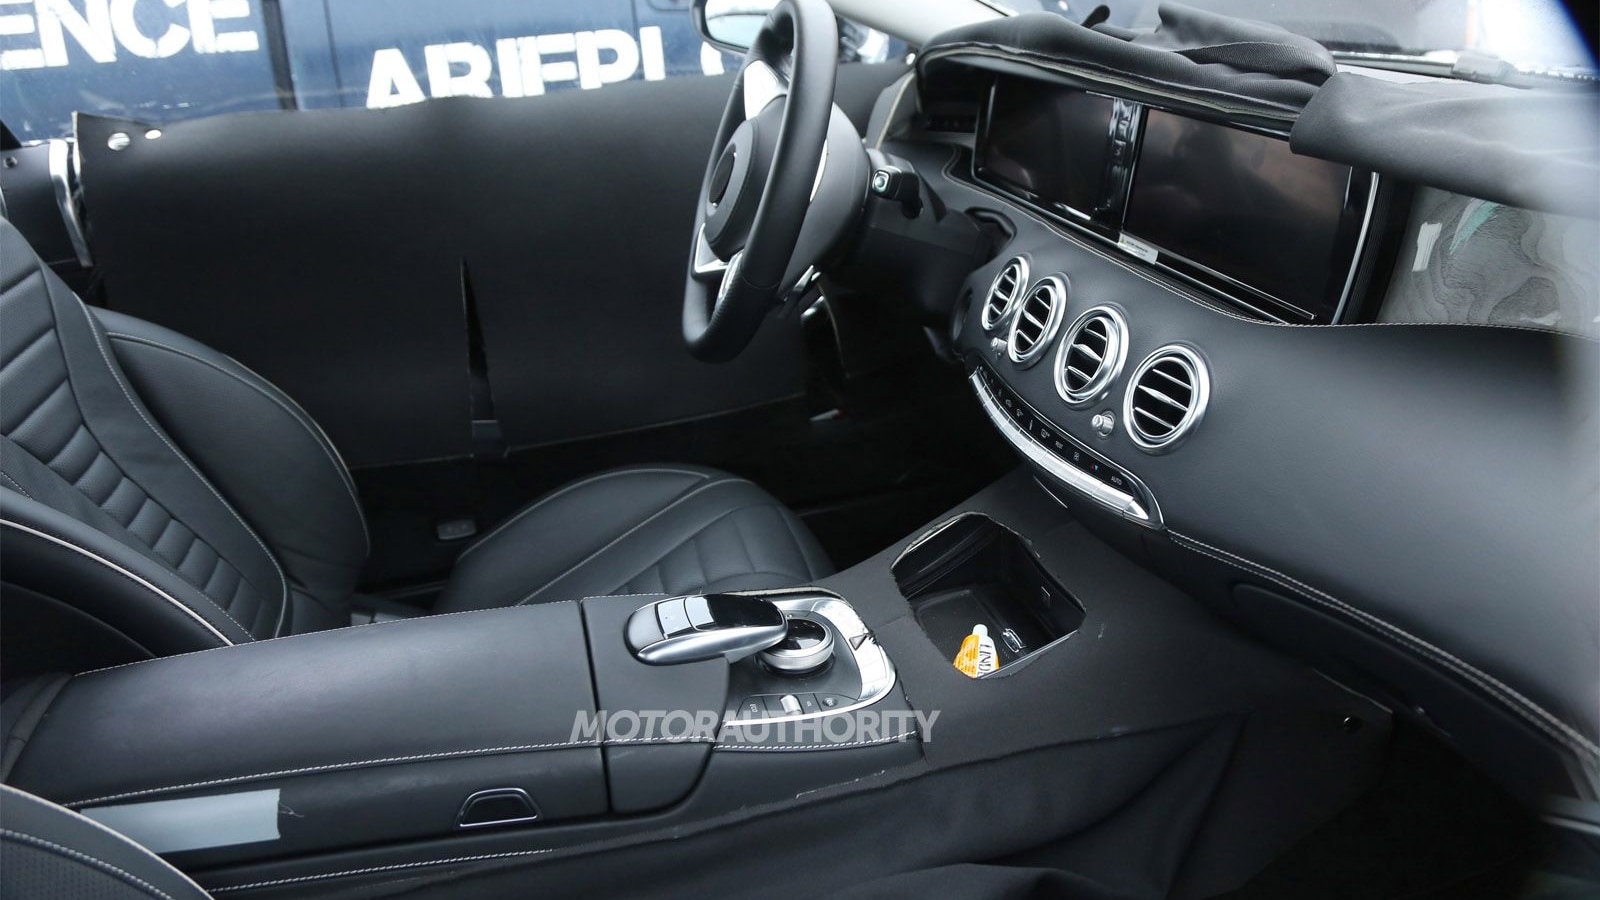 2015 Mercedes-Benz S-Class Coupe spy shots